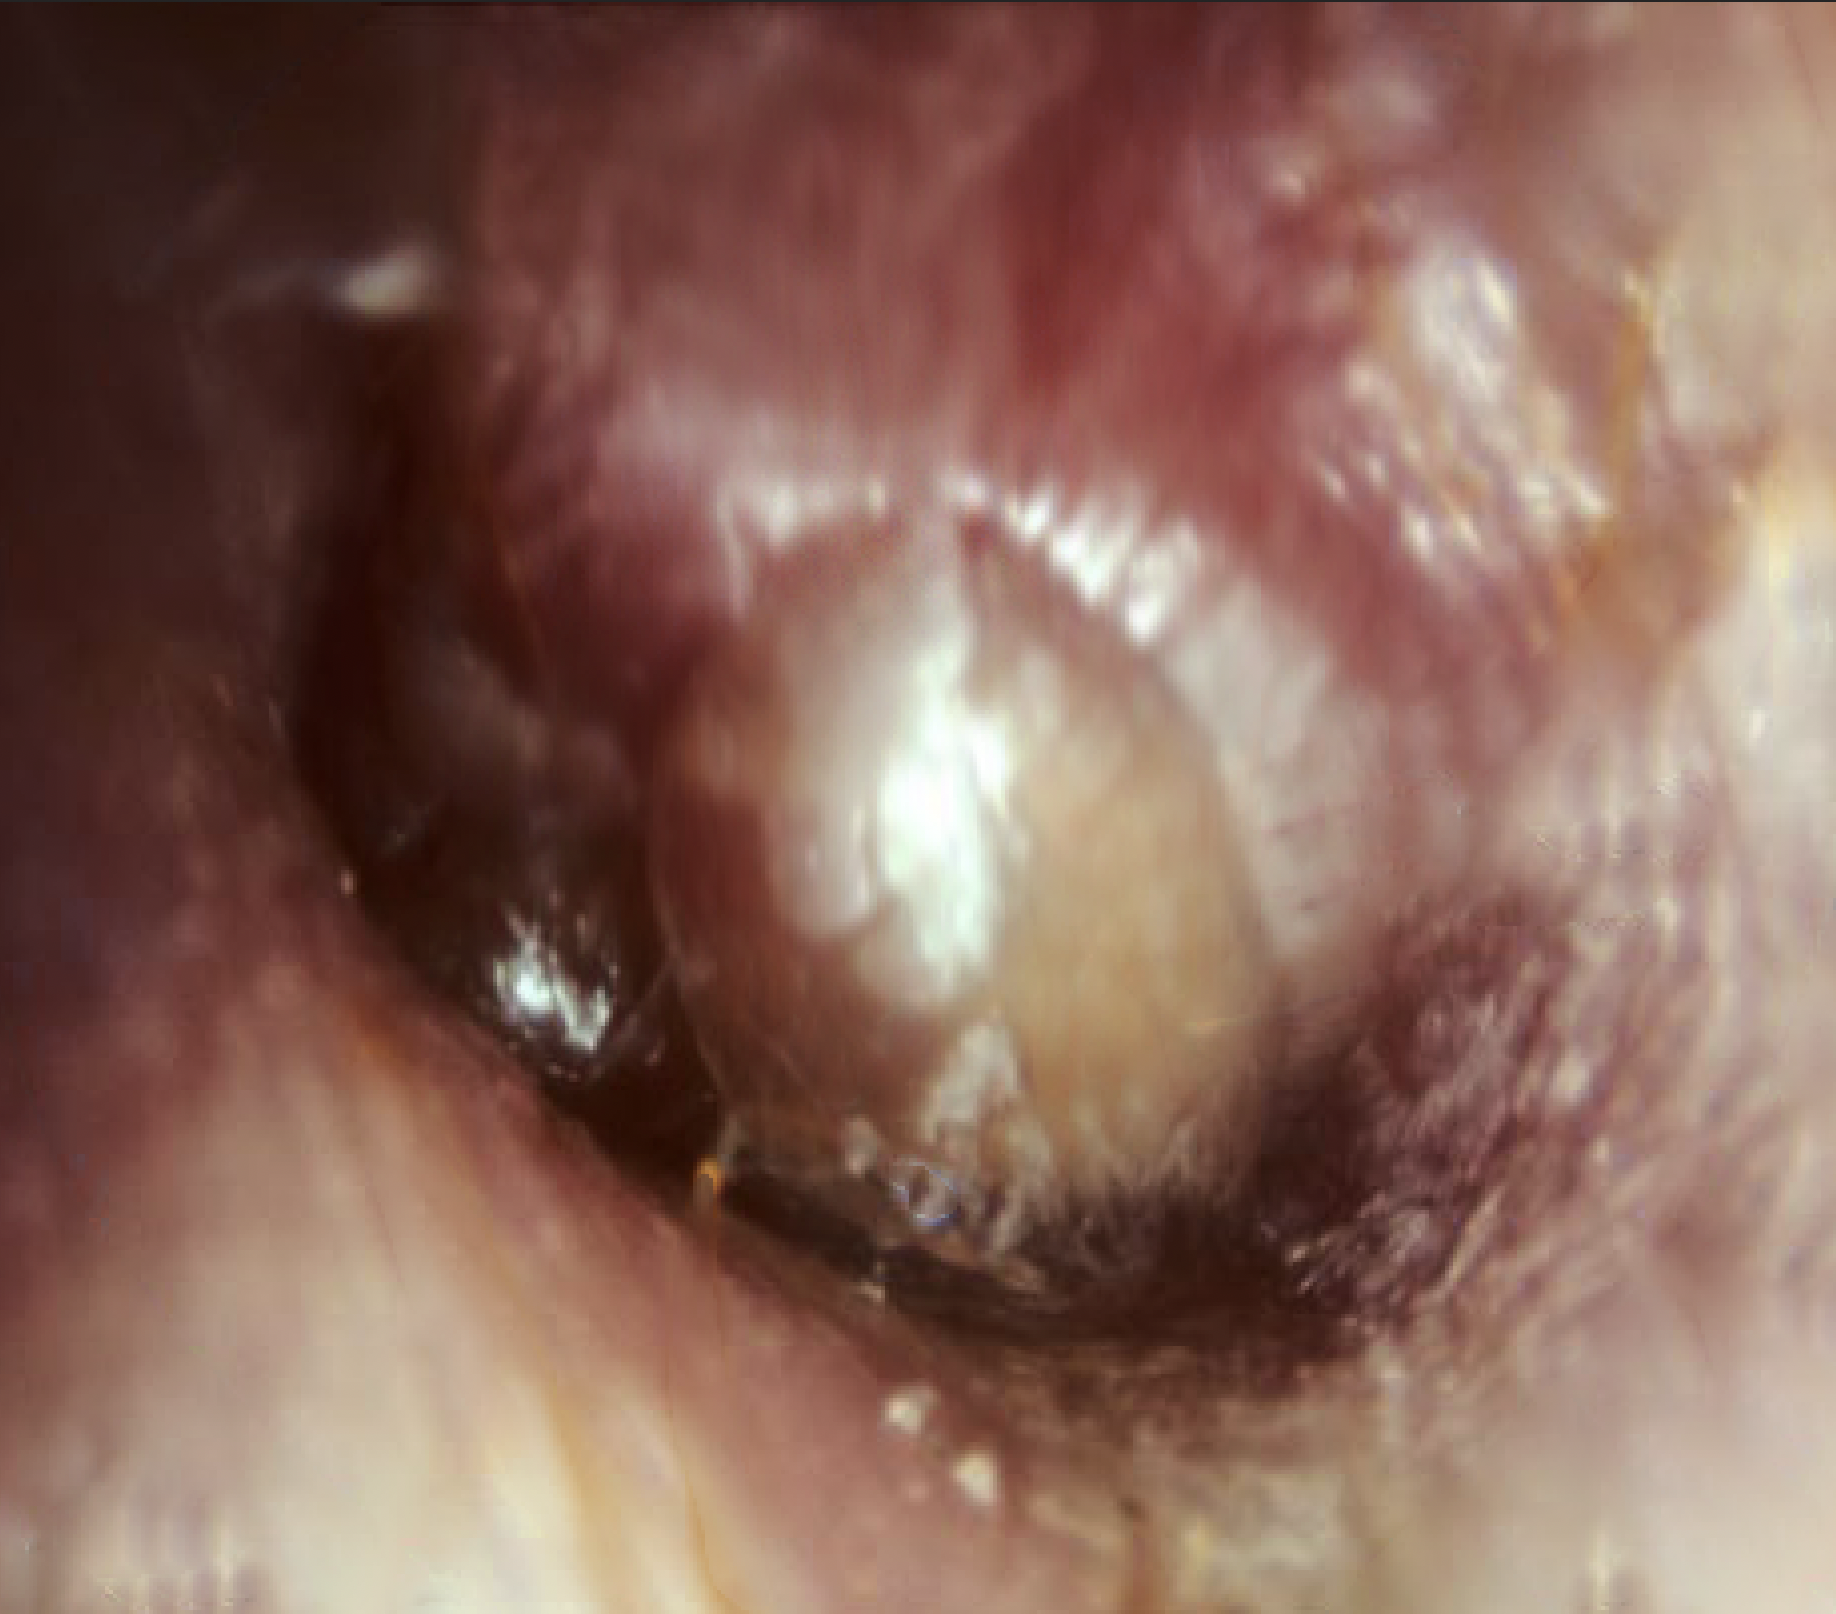 Example of bullous myringitis.